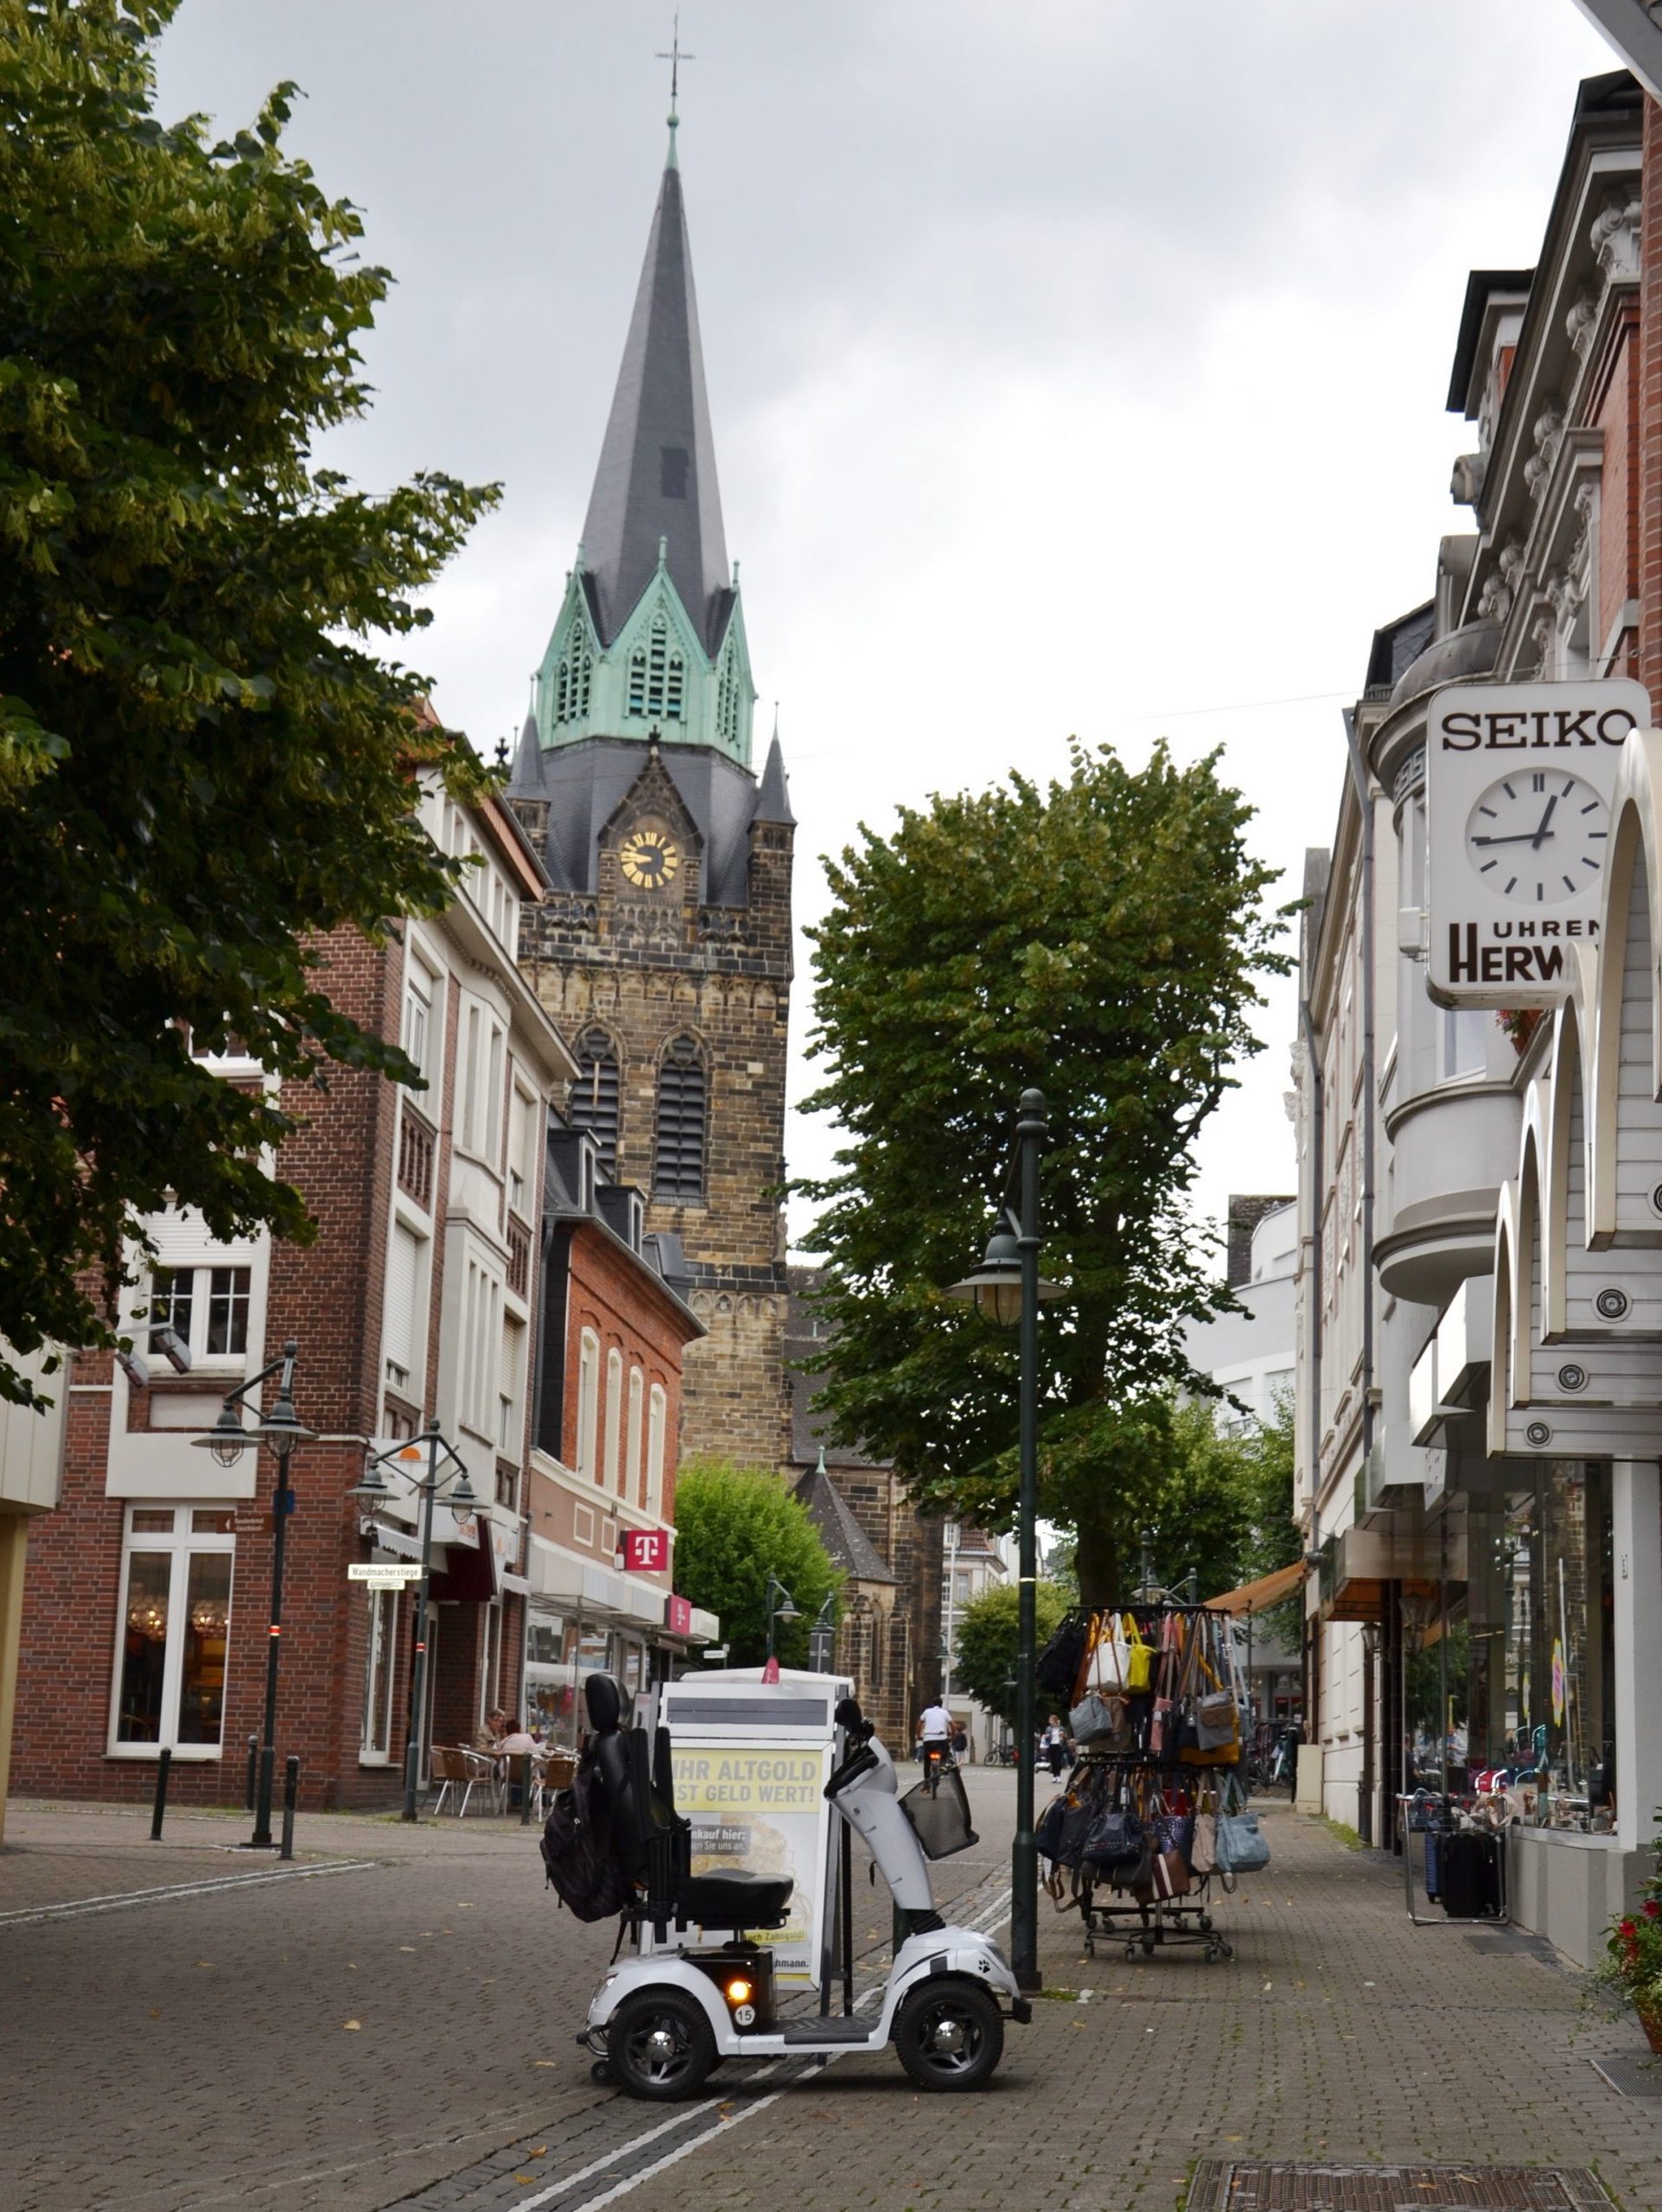 Am Samstag in die Ahlener Innenstadt: Einkaufen in einer der kundenreichsten Einkaufsstraßen des Münsterlandes